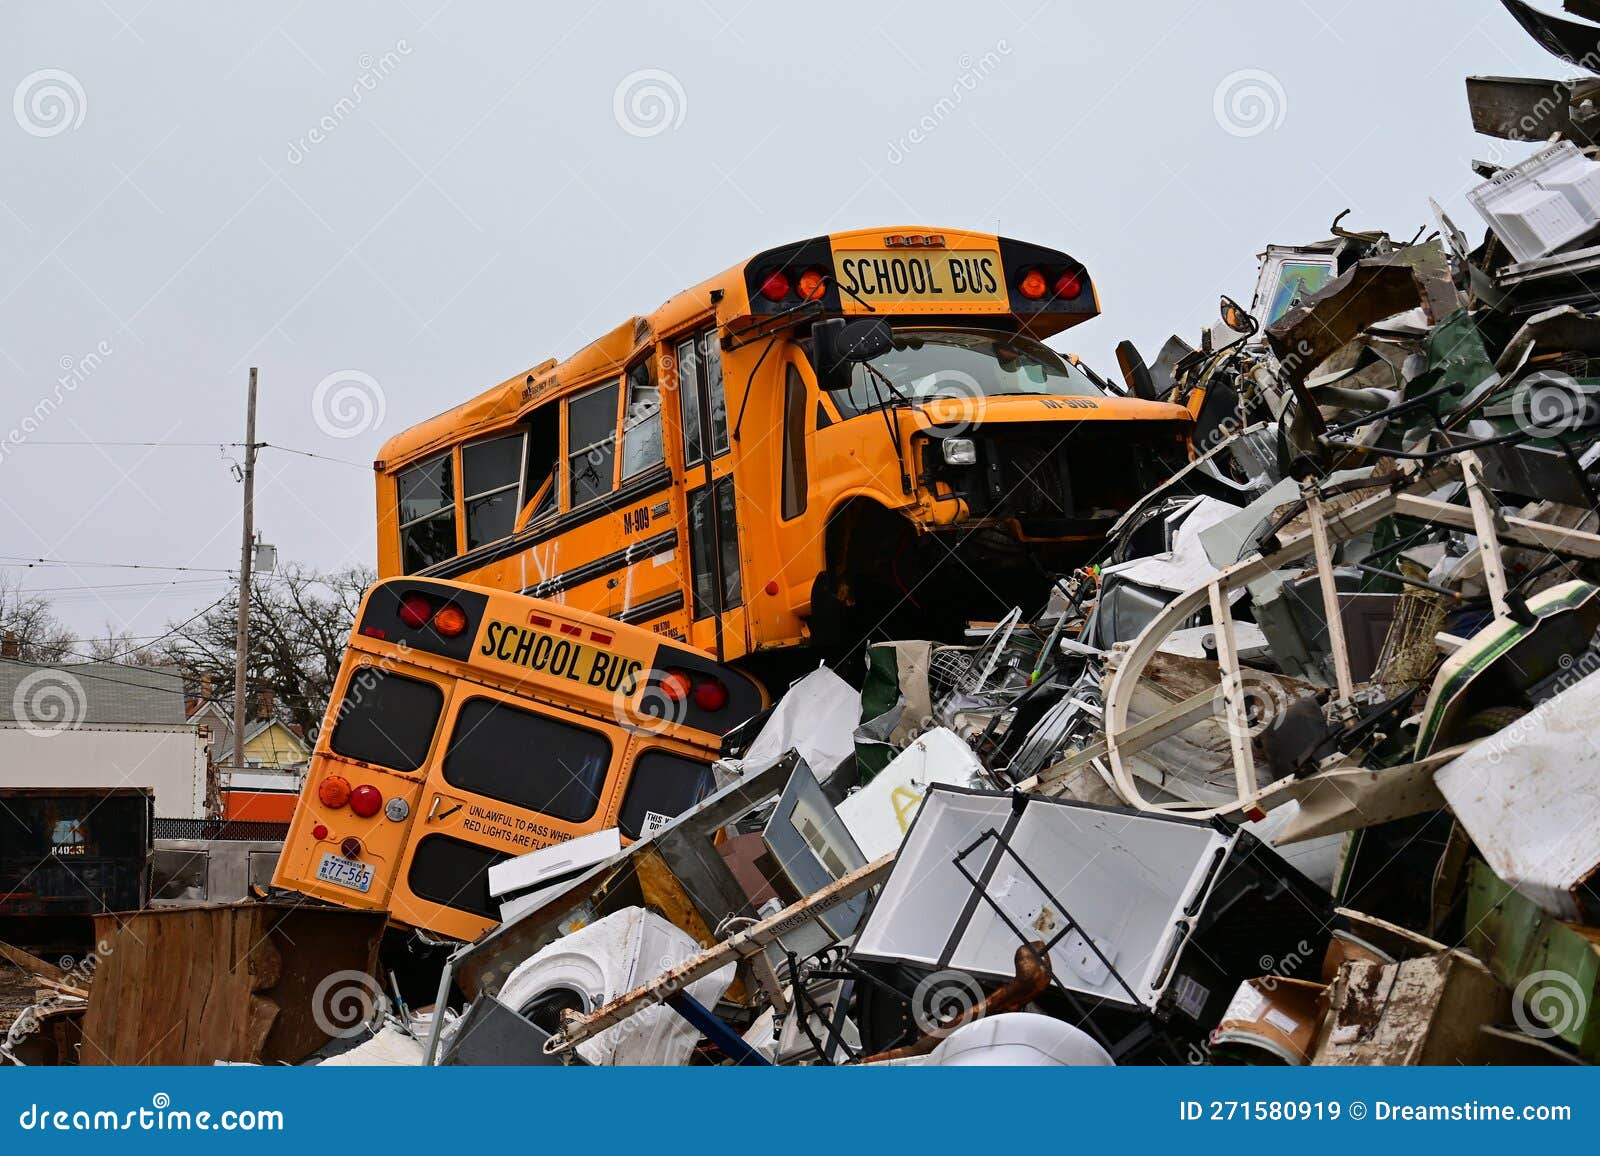 pair-school-buses-top-huge-pile-scrap-metal-junkyard-bus-looks-out-place-271580919.jpg